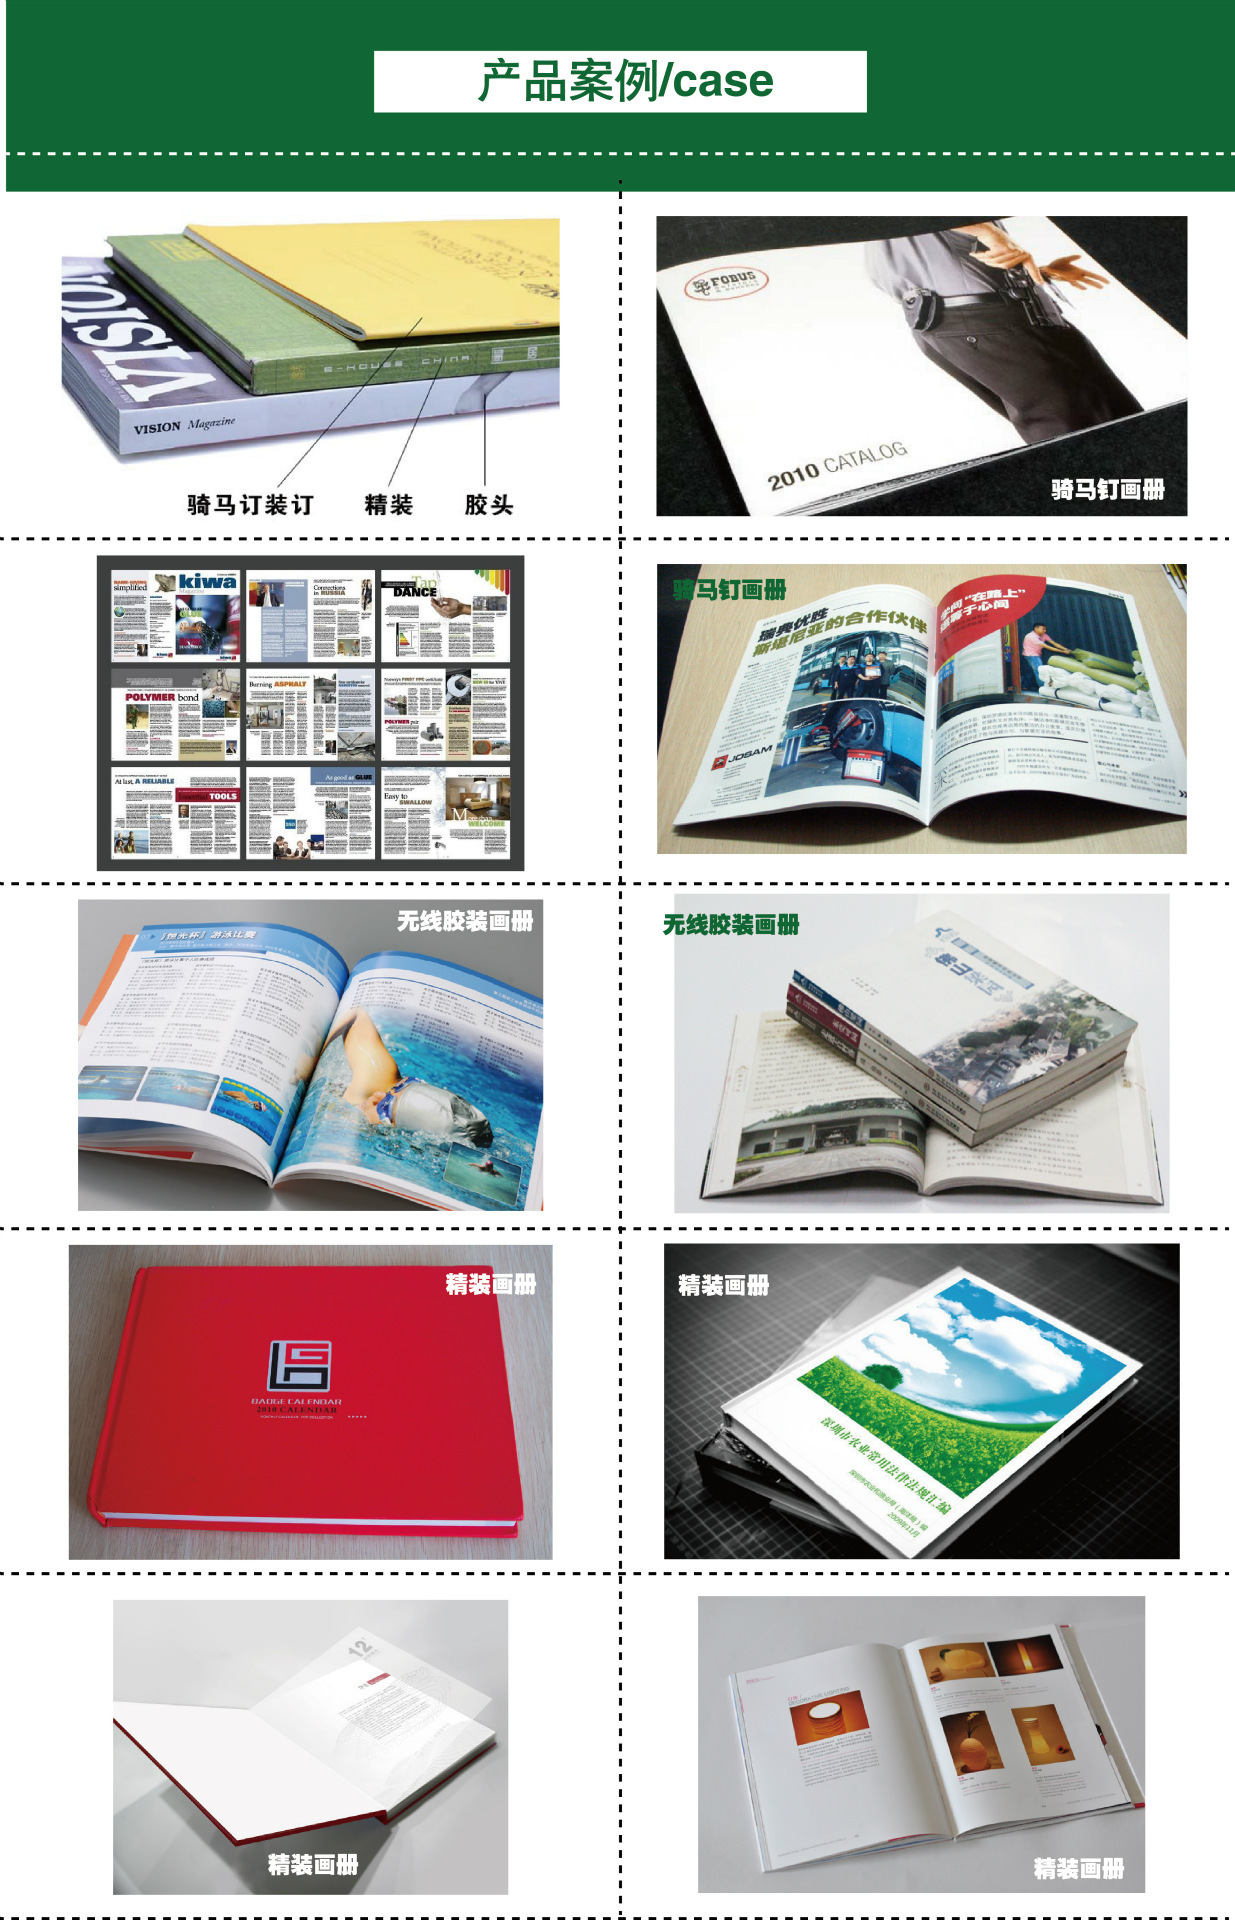 印刷高档彩色画册_画册制作模板 画册设计制作_高档画册印刷制作